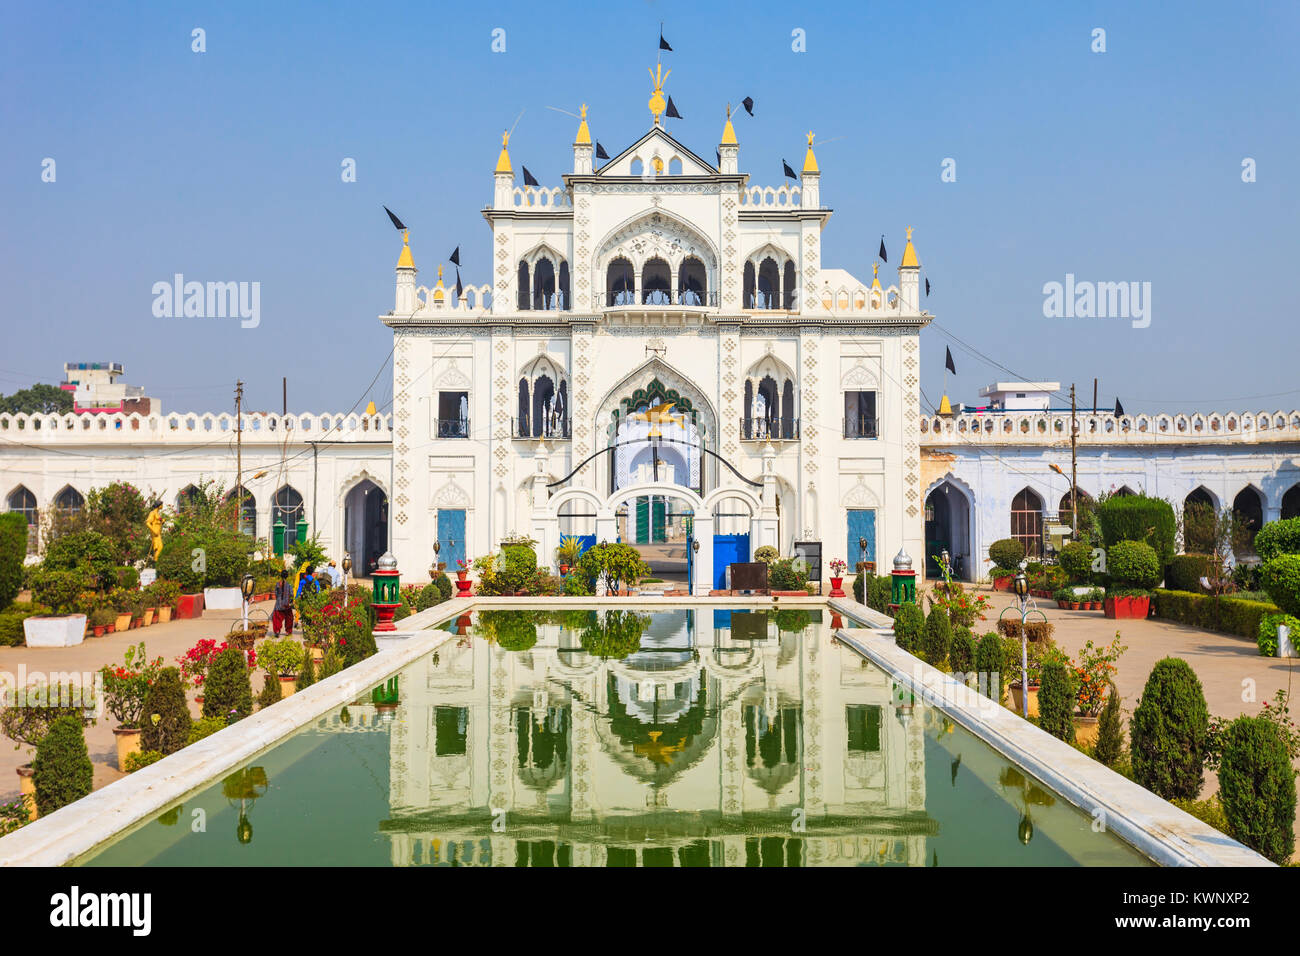 Chota Imambara (Hussainabad Imambara) is monument located in Lucknow, India Stock Photo